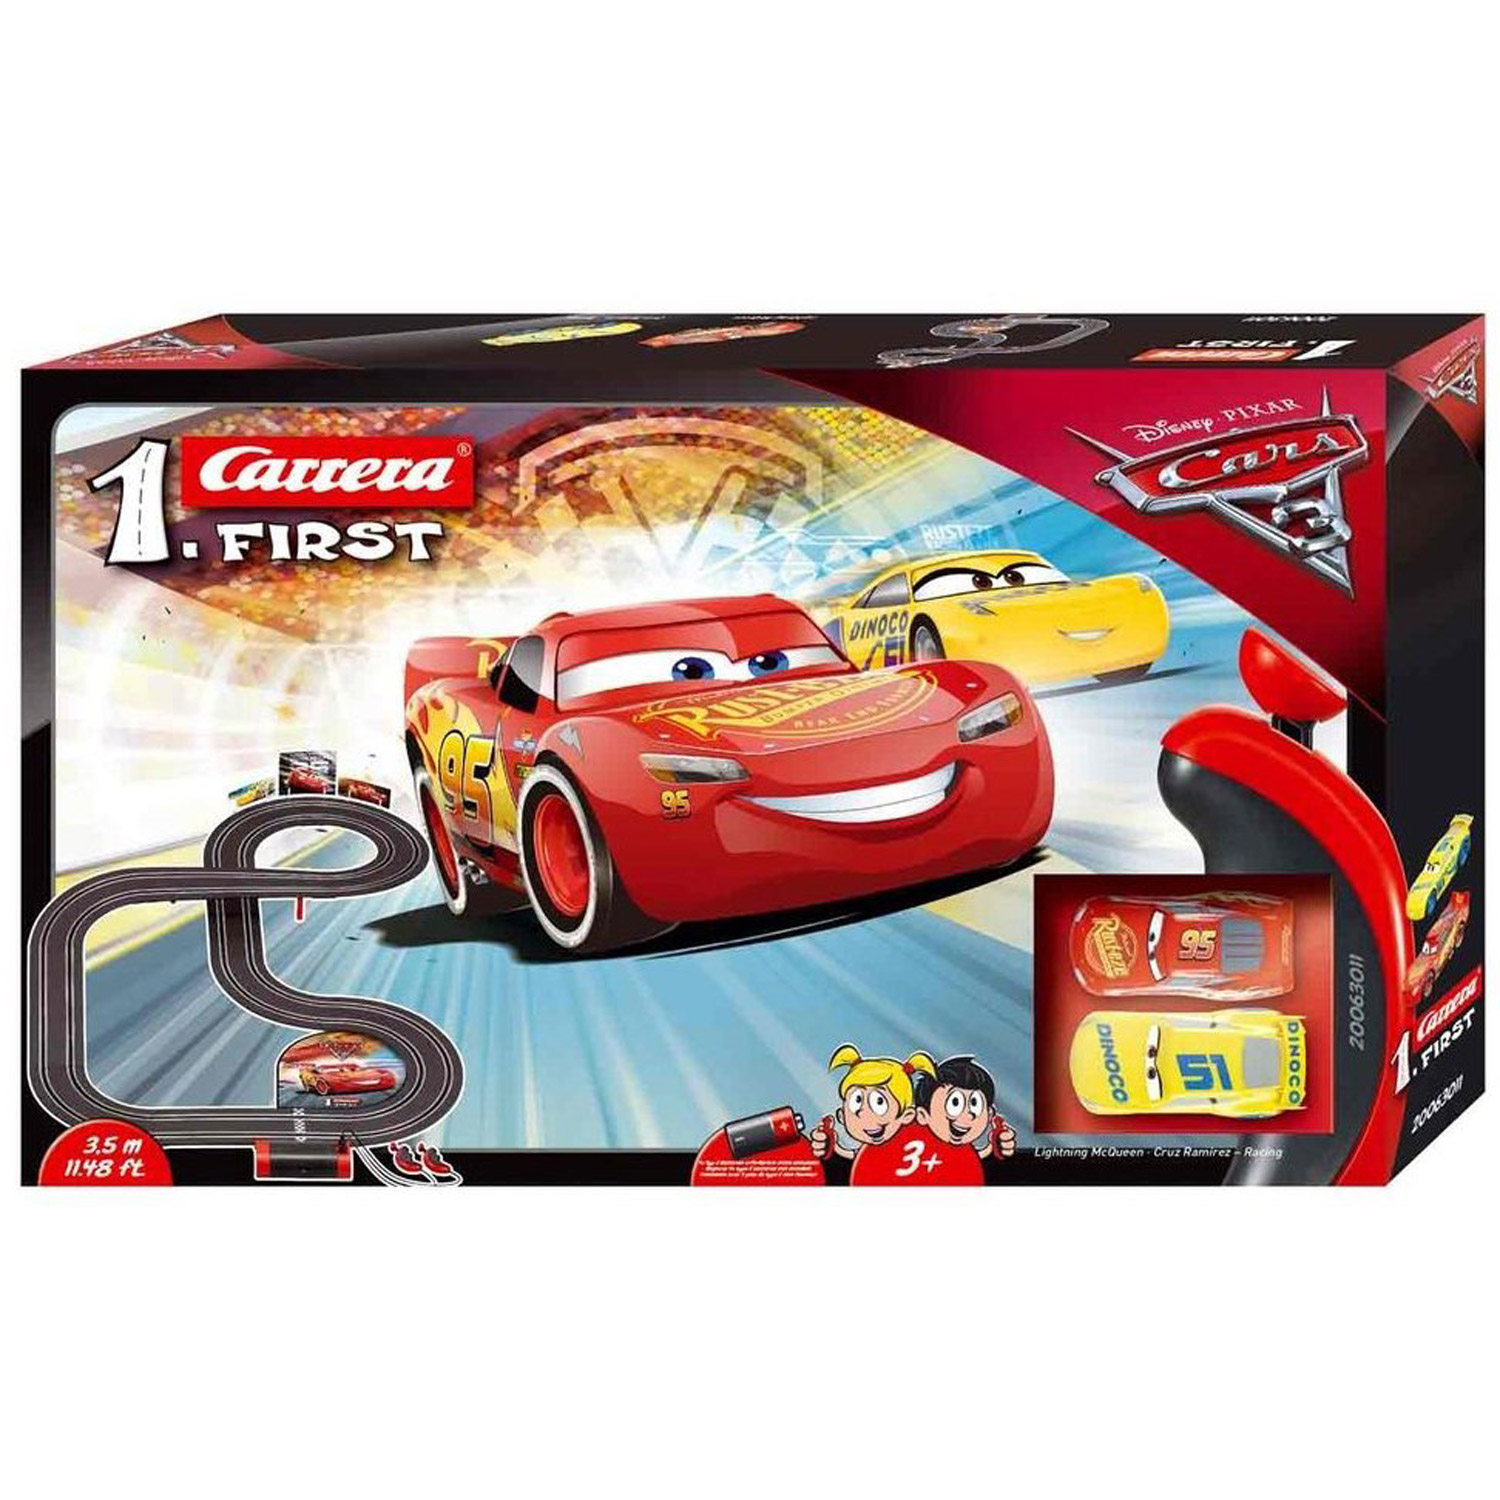 Circuit de voitures Carrera First : Cars 3 - Carrera - Rue des Maquettes